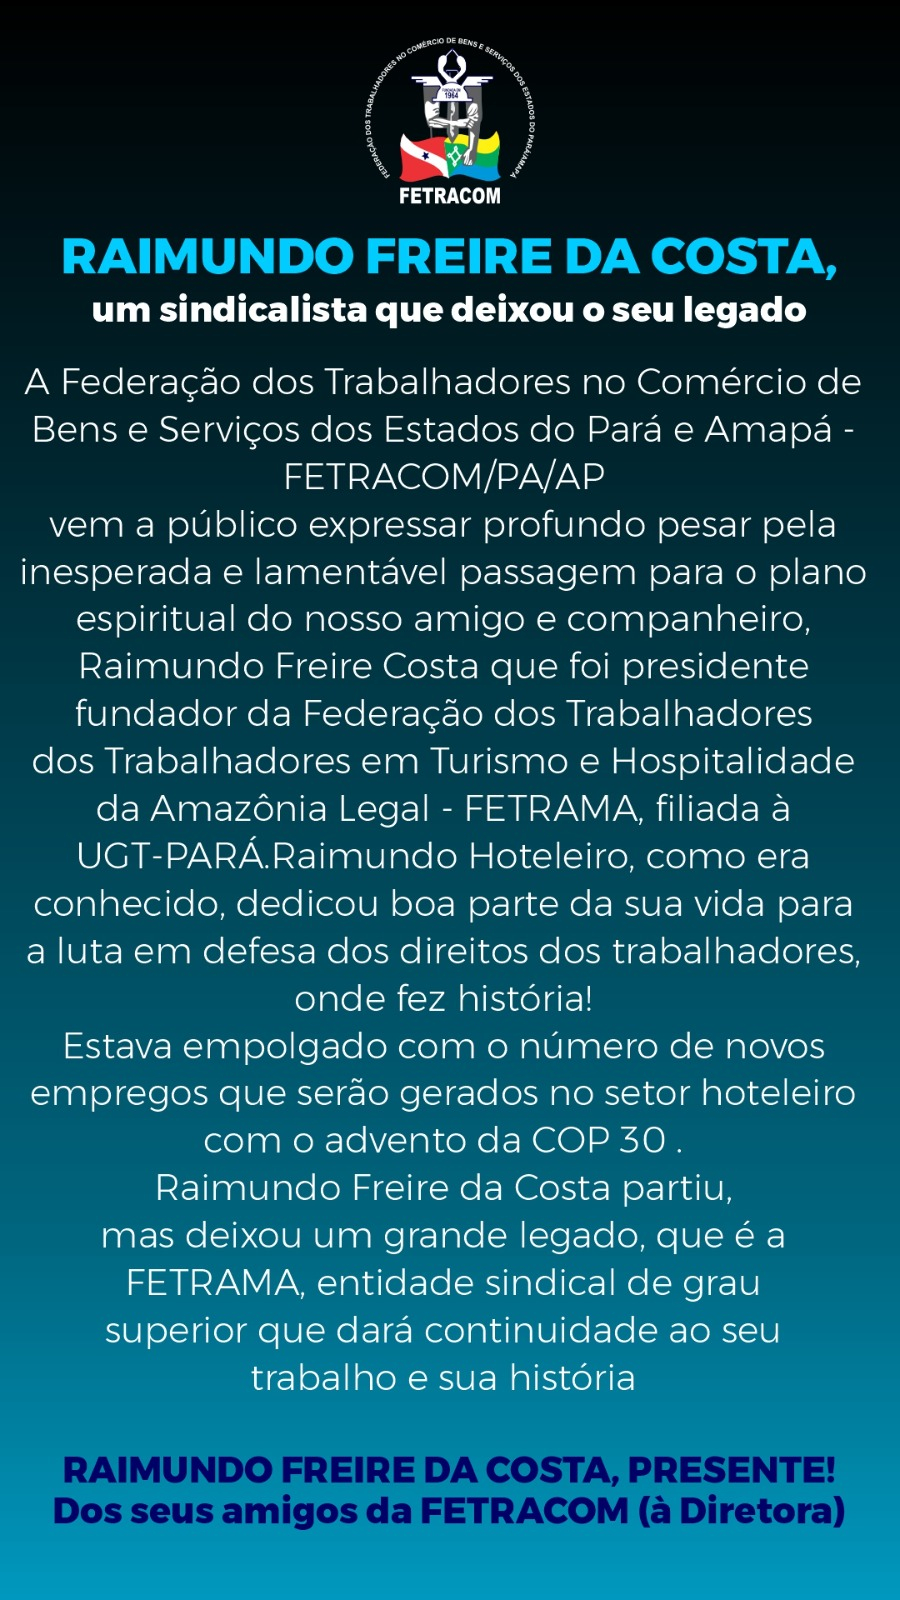 Raimundo Freire da Costa, um sindicalista que deixou o seu legado